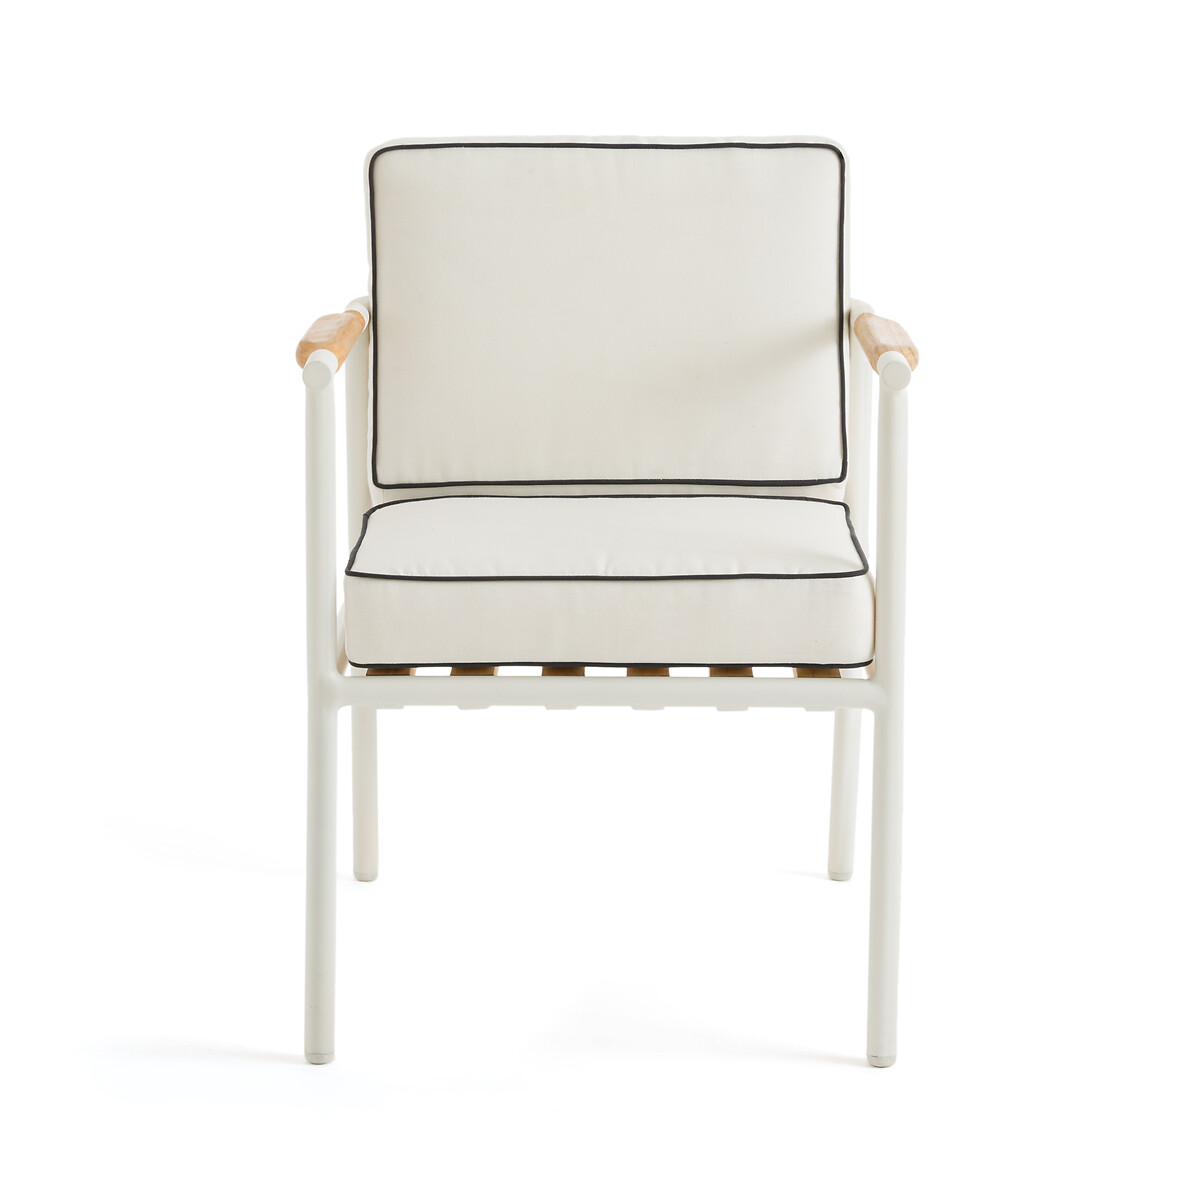 Кресло Столовое для сада Isabbo единый размер белый LaRedoute - фото 2